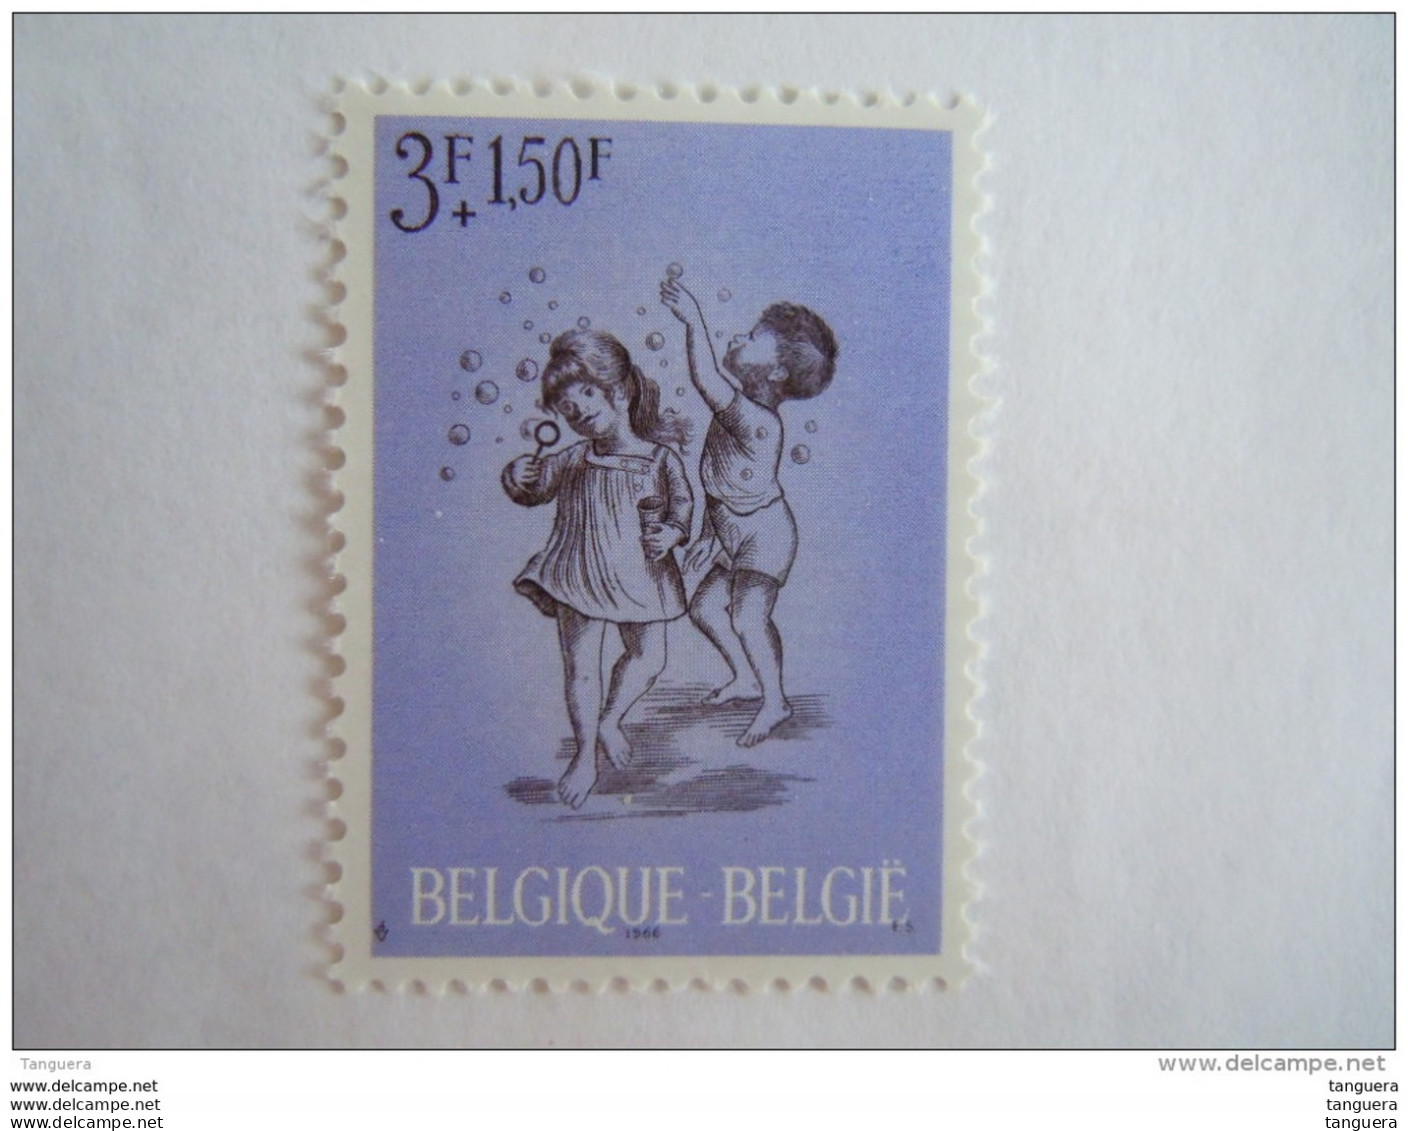 België Belgique 1966 Kinderspelen Jeux D'enfants Bulles De Savon COB YV 1401 MNH ** Chiffre Année Trôp Haut - Unclassified